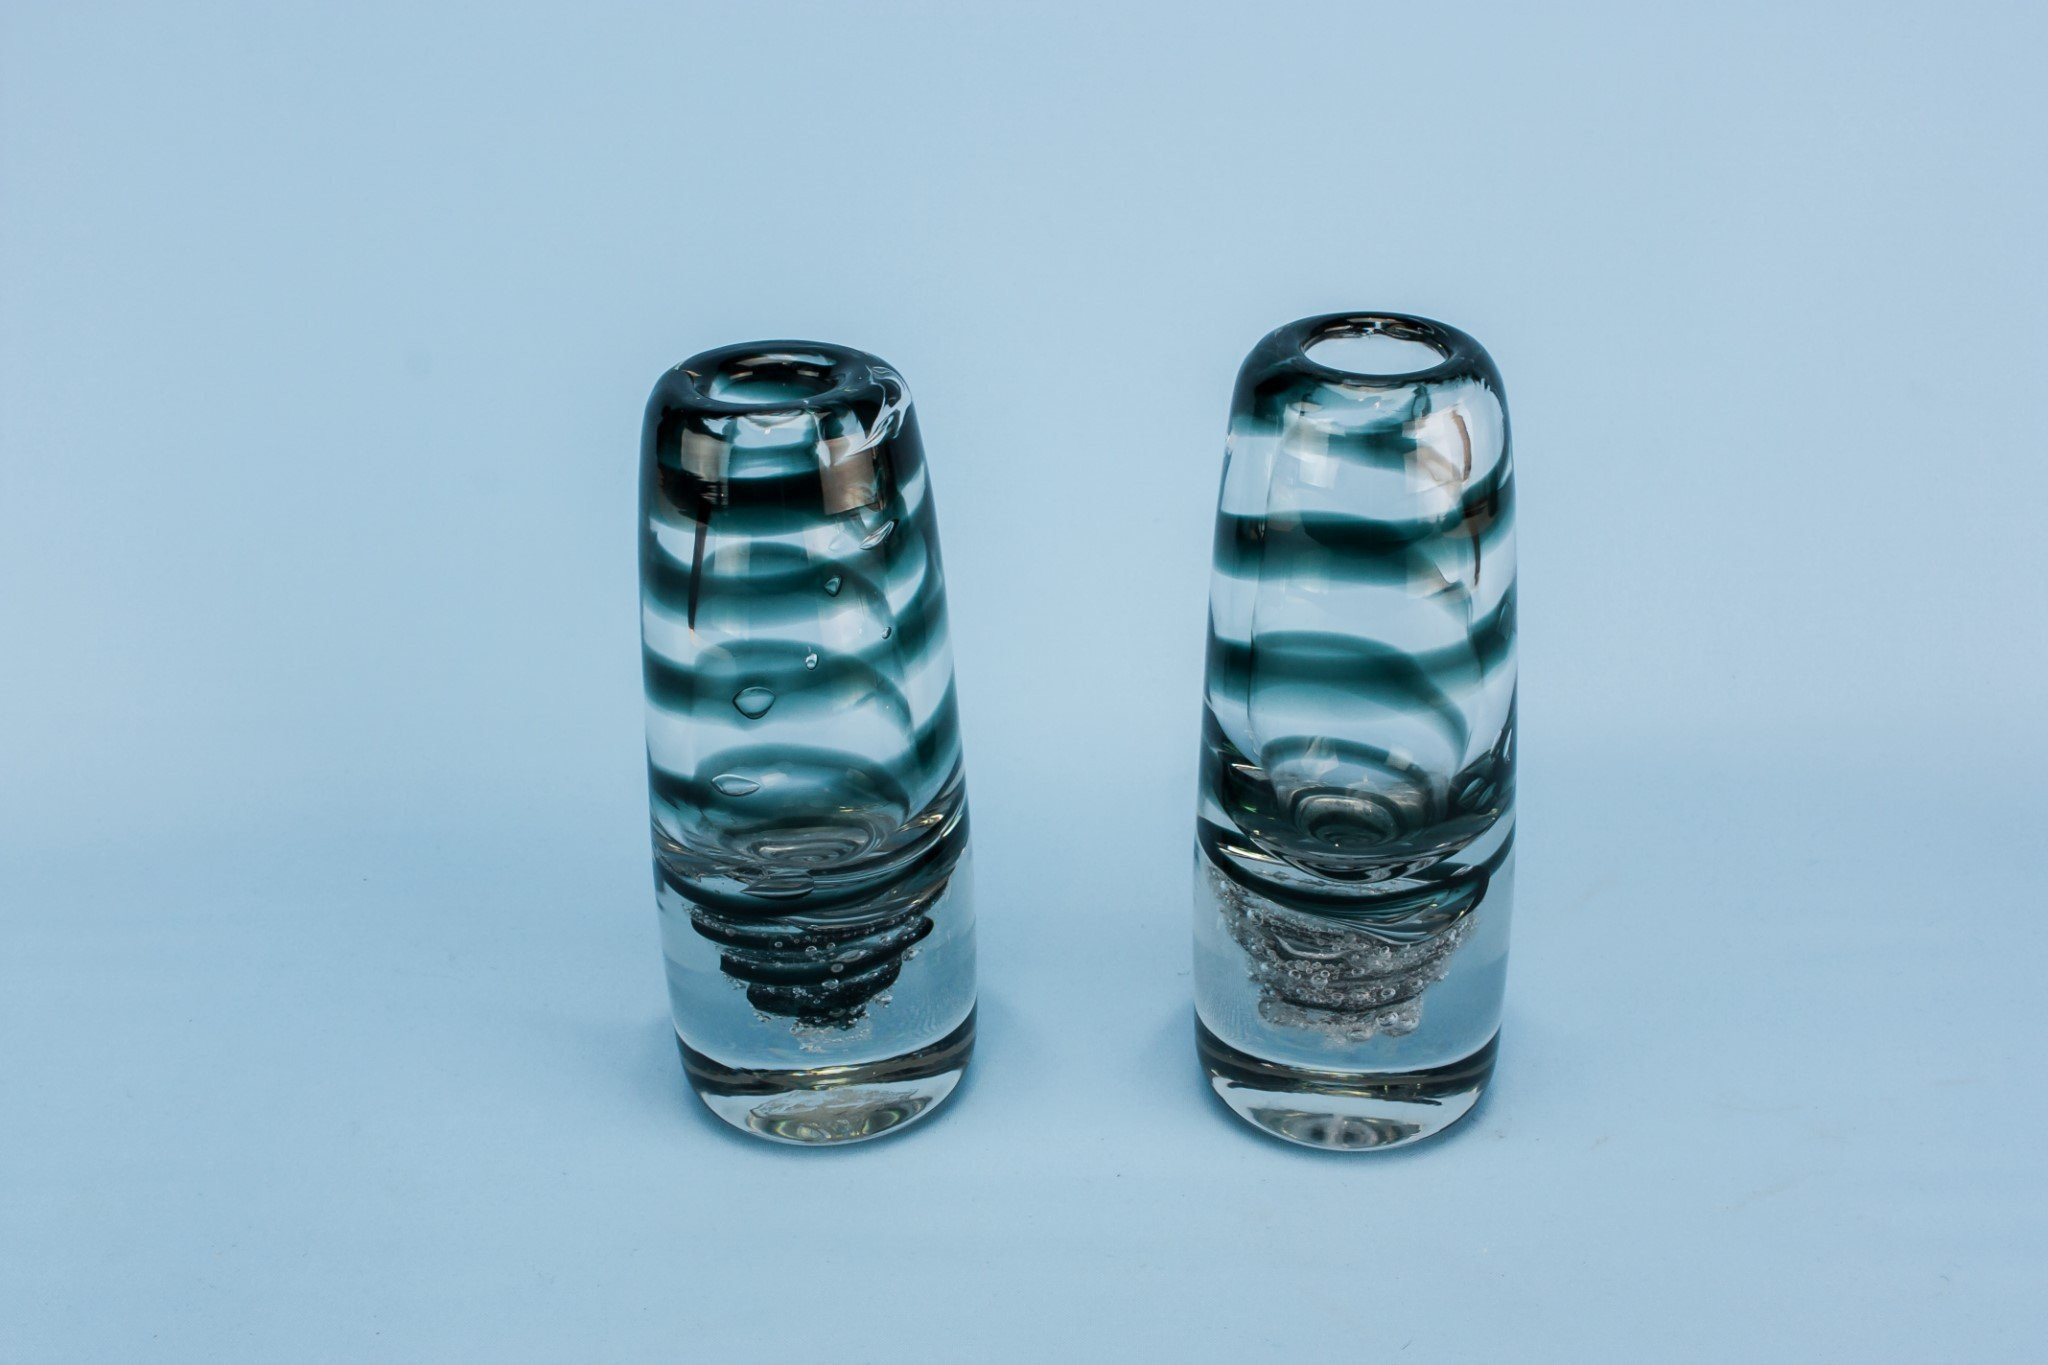 16 glass cylinder vase of 17 fresh antique blue glass vases bogekompresorturkiye com intended for 2 glass vases